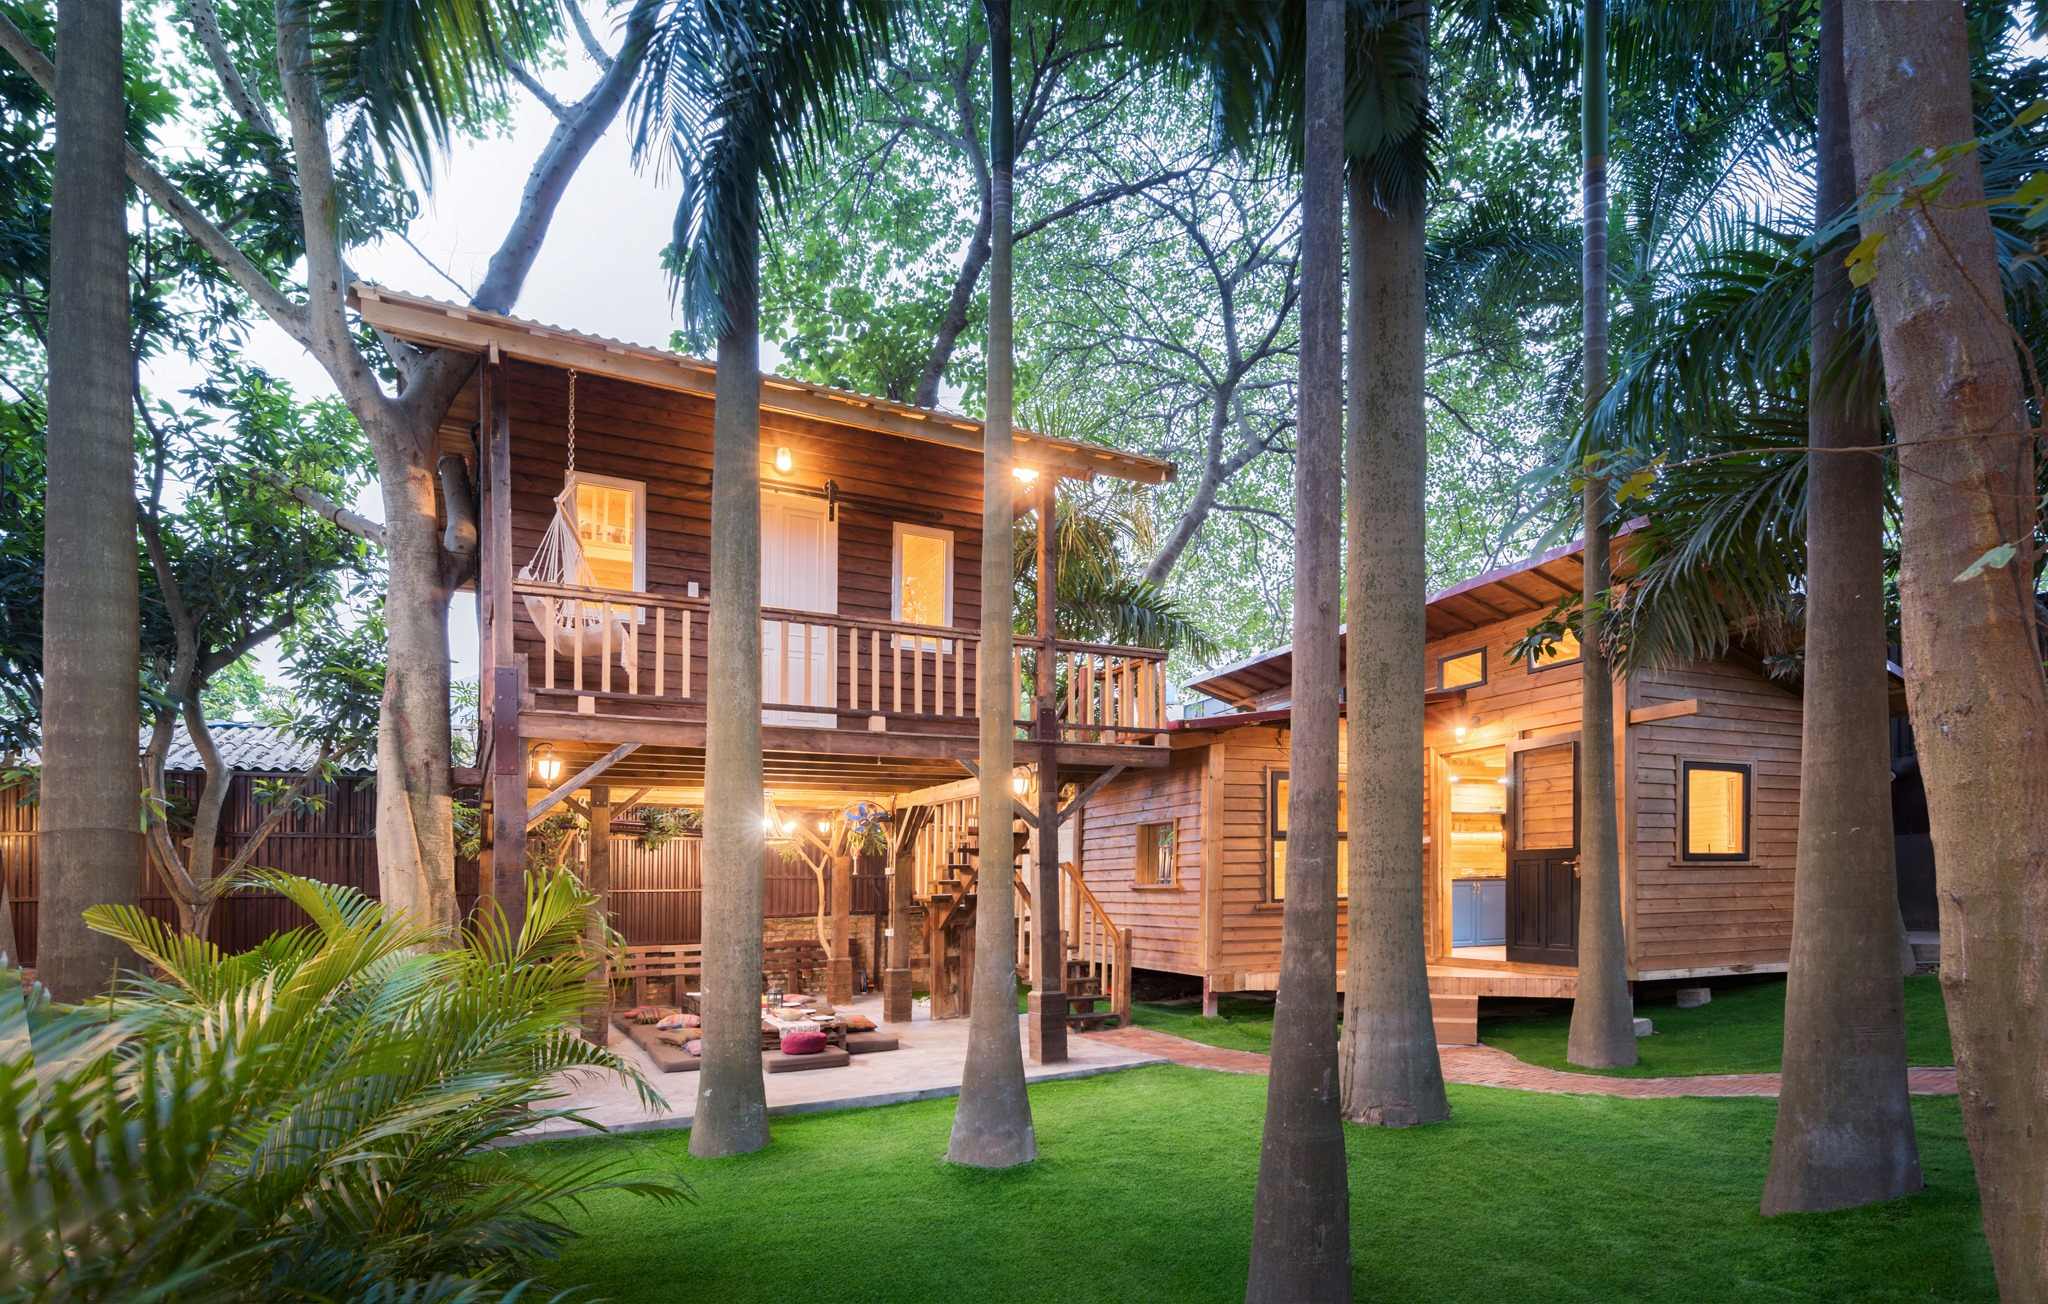 Review Hygge homestay độc đáo với thiết kế nhà gỗ “trong rừng” tại Hà Nội